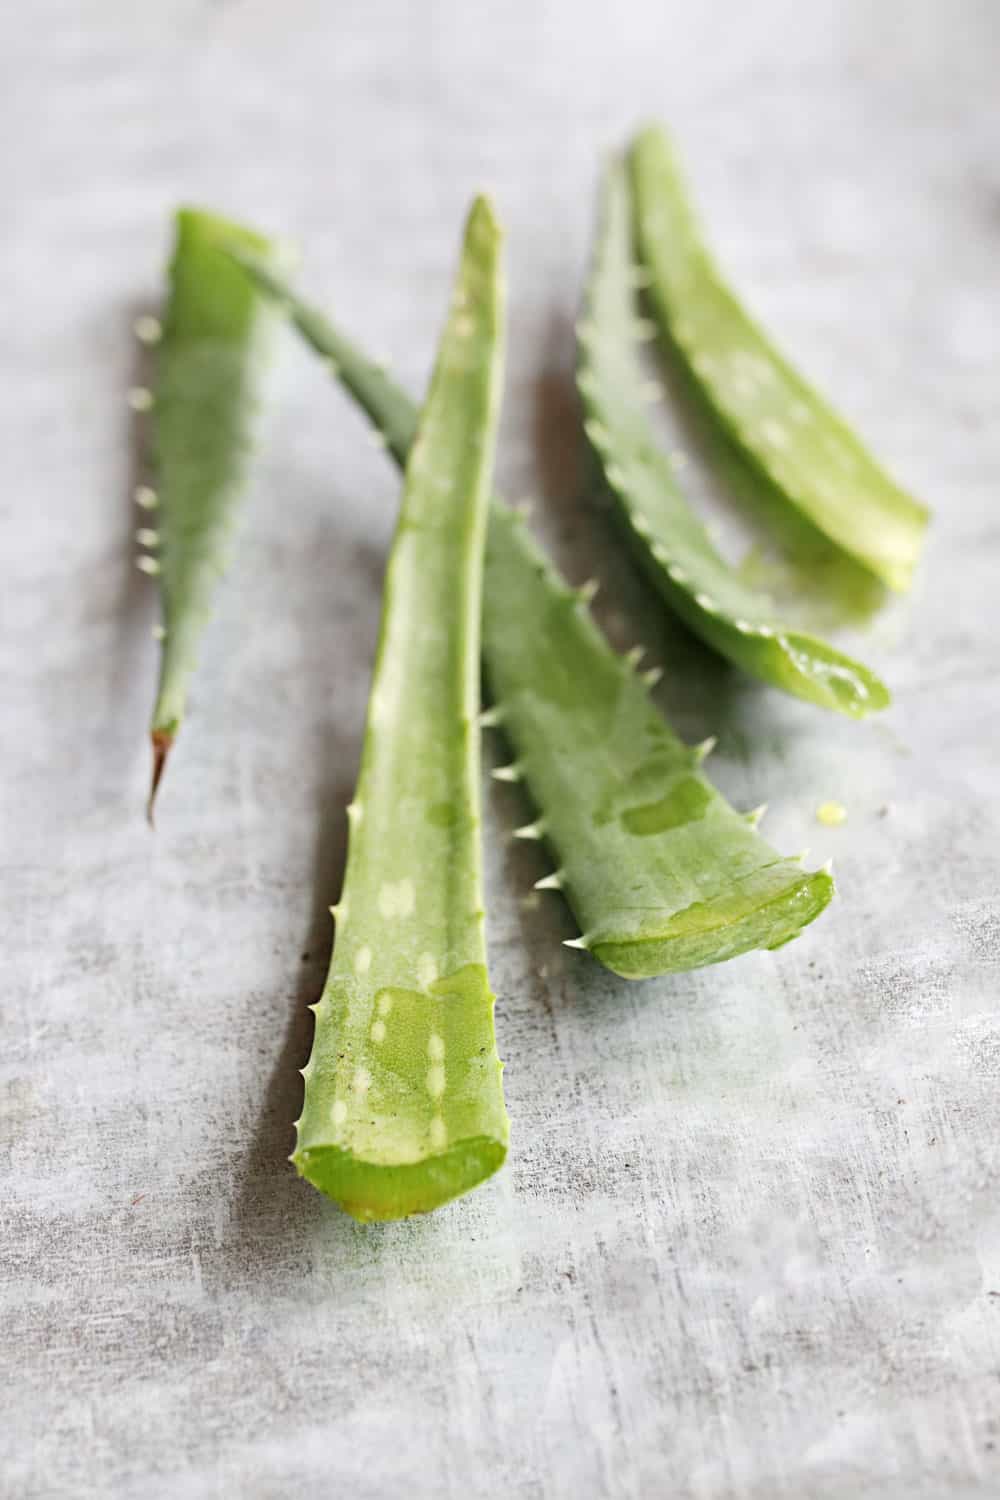 How to store cut aloe vera leaves and fresh aloe gel